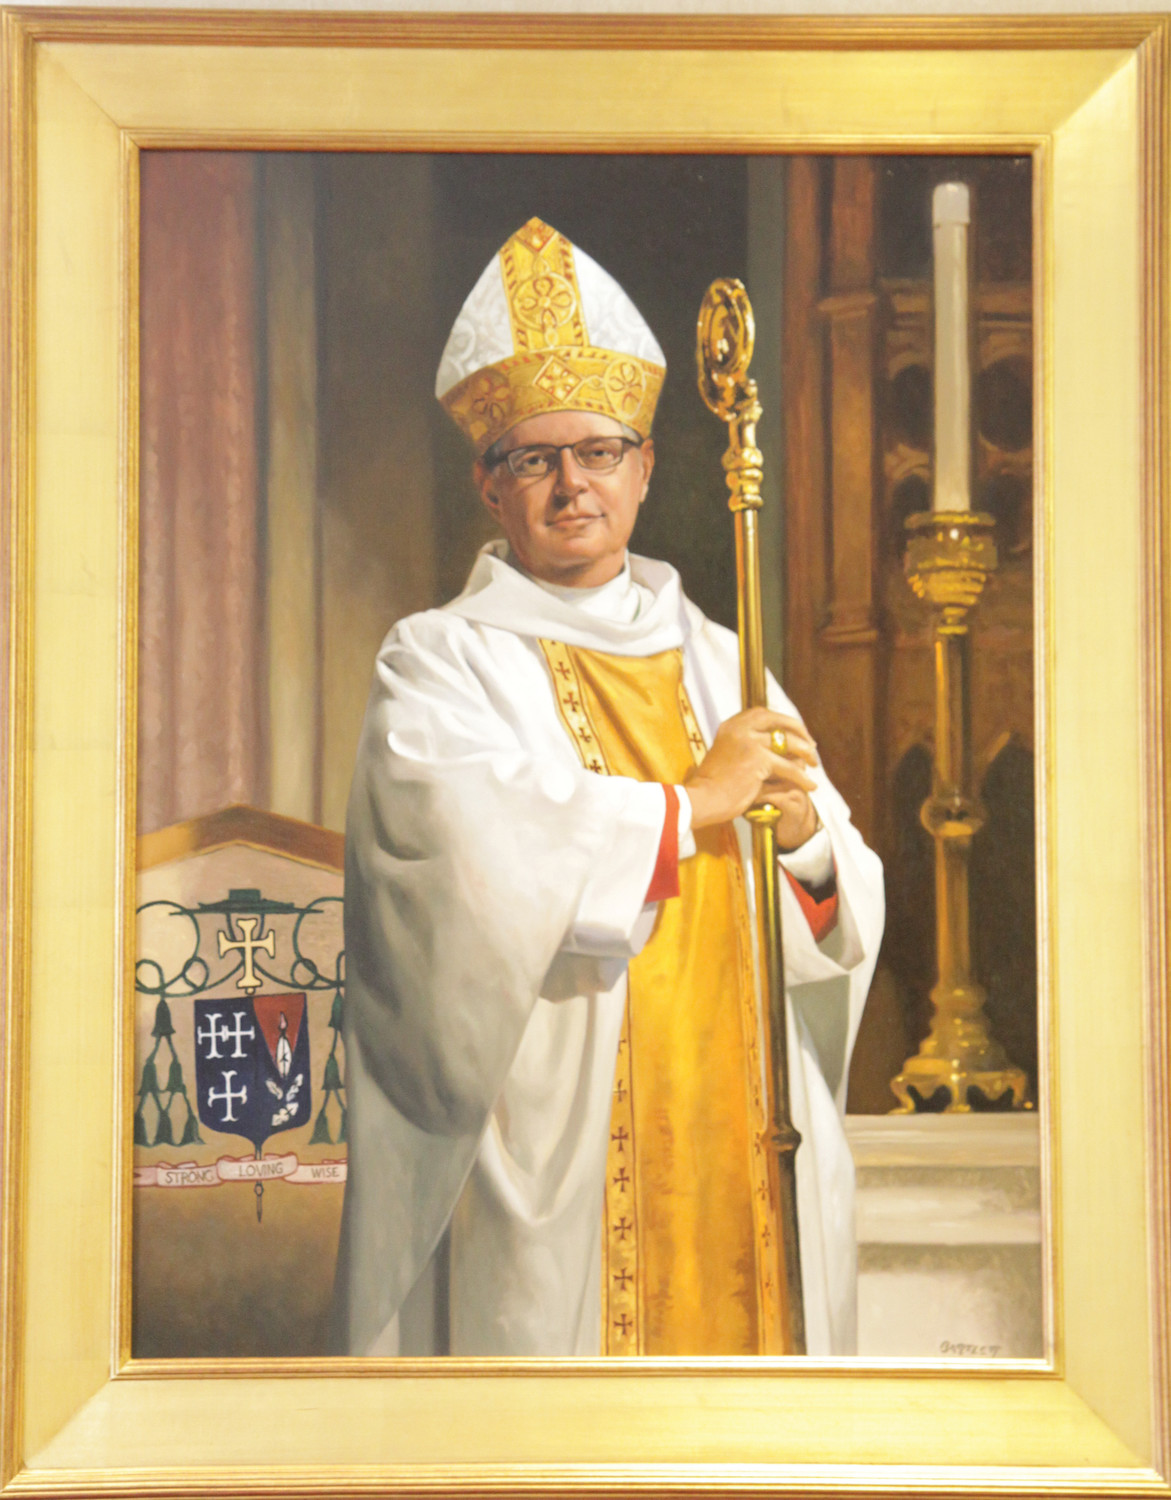 Bishop Tobin's 25th Anniversary